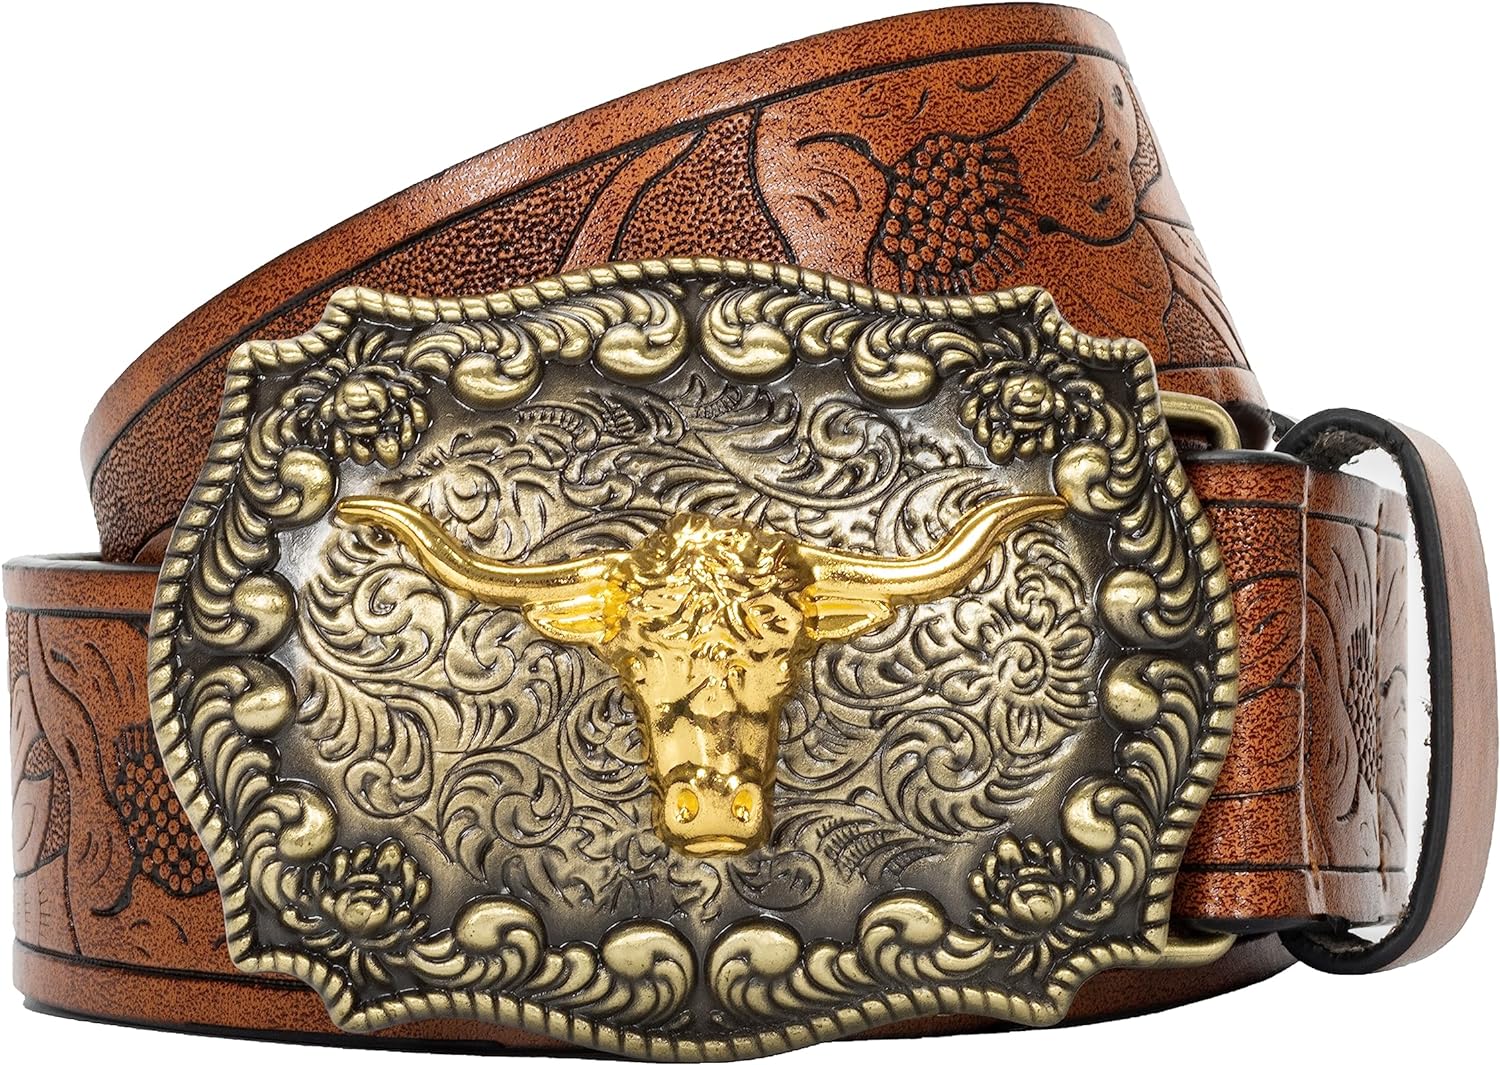 Western Cowboy Belts for Men Women - Bull Floral Engraved Belt